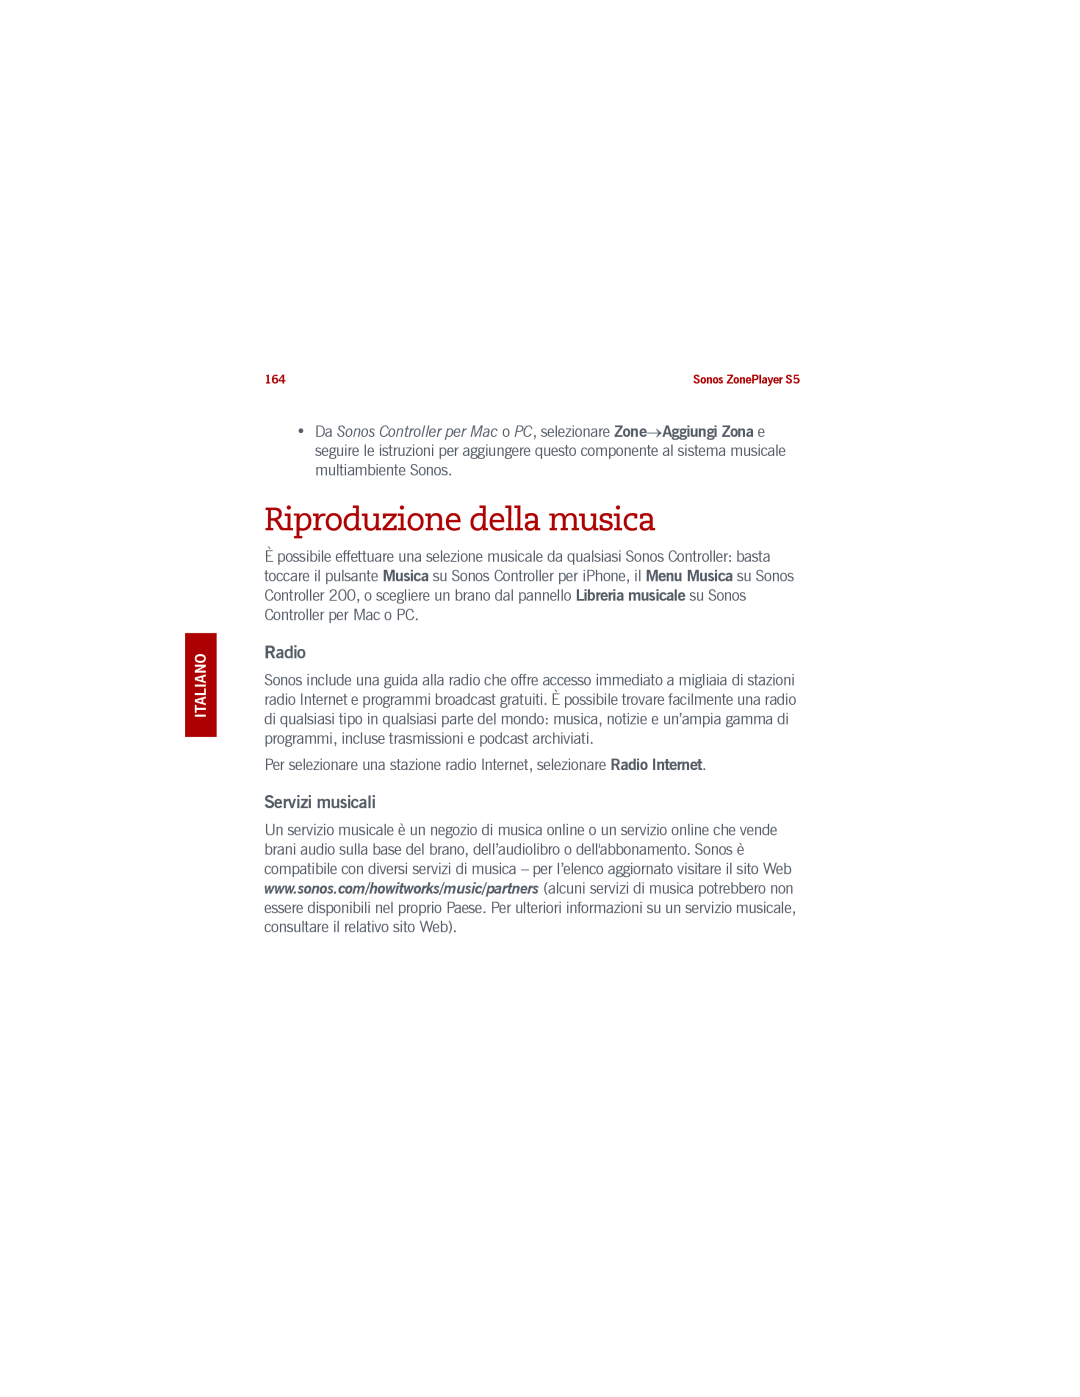 Sonos S5 manual Riproduzione della musica, Radio, Servizi musicali, Svenska Italiano 